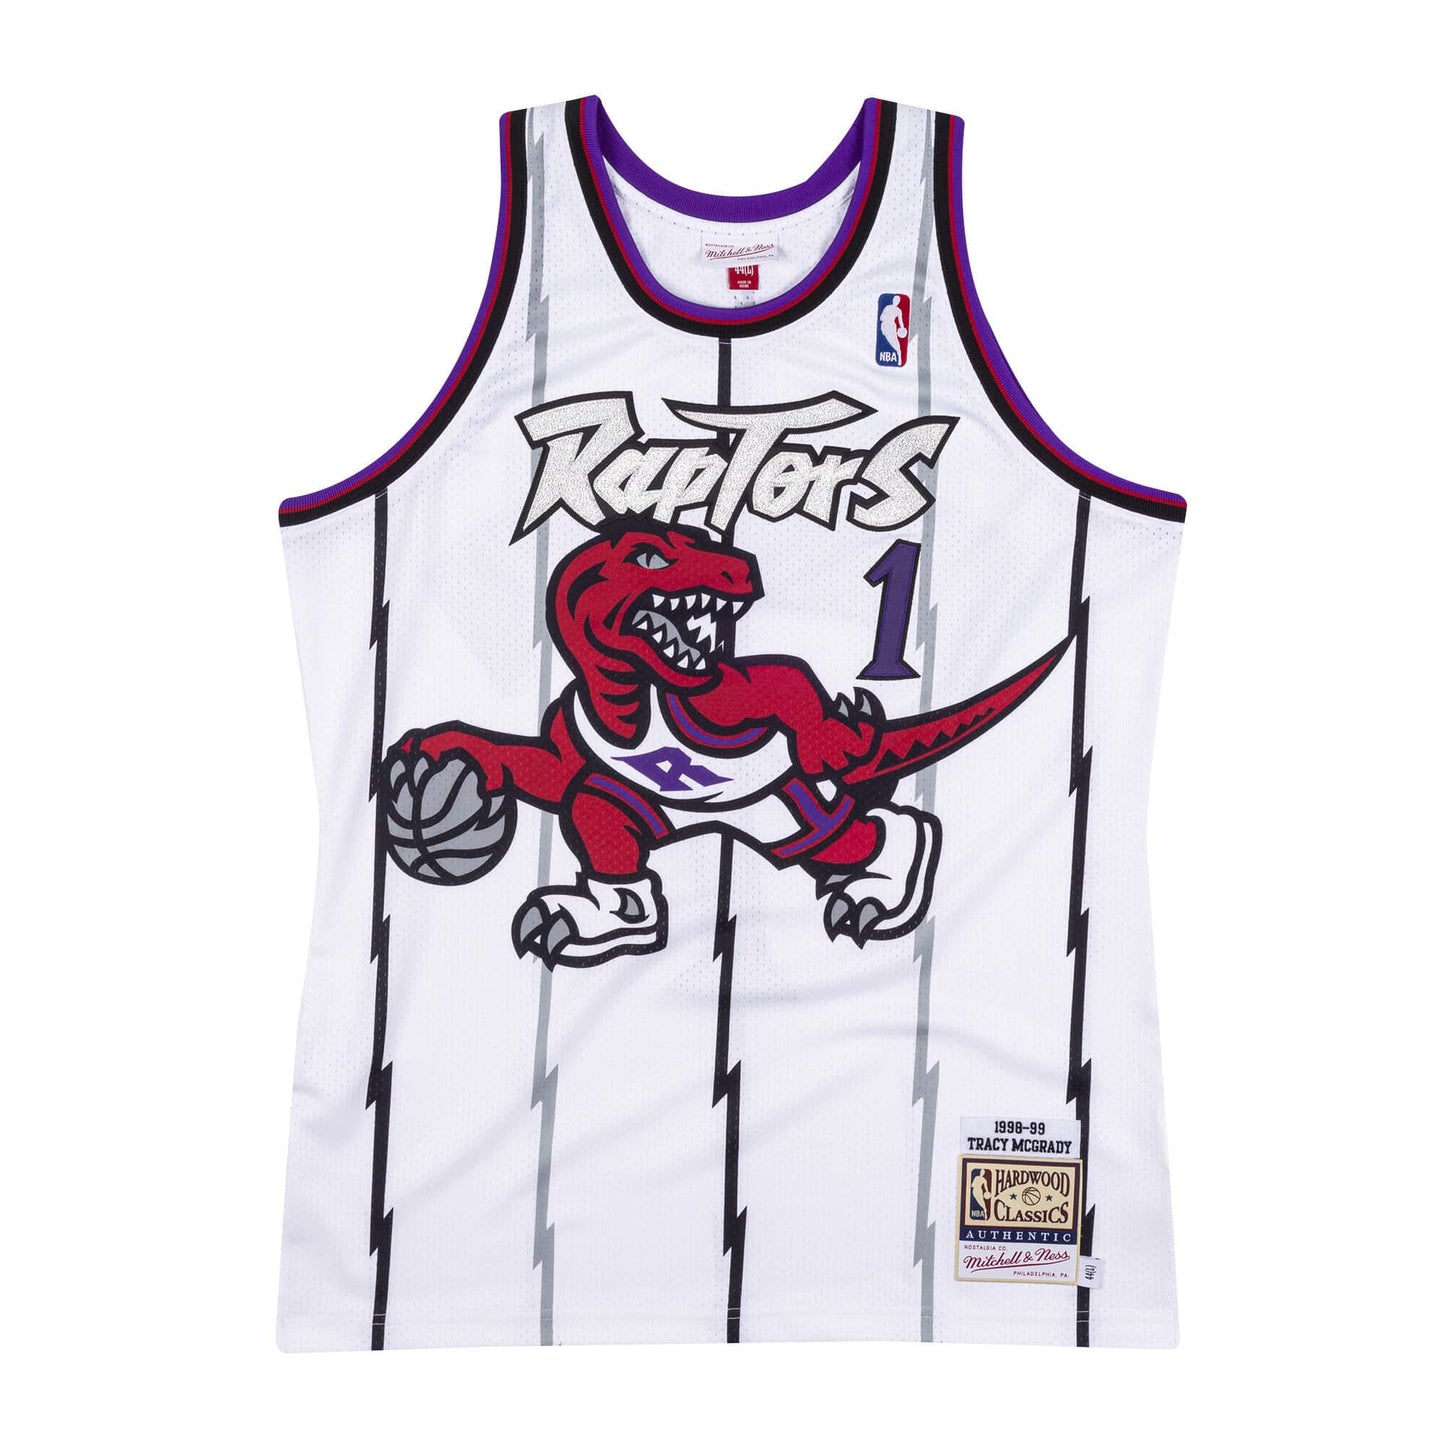 Authentic Jersey Toronto Raptors 1998-99 Tracy McGrady